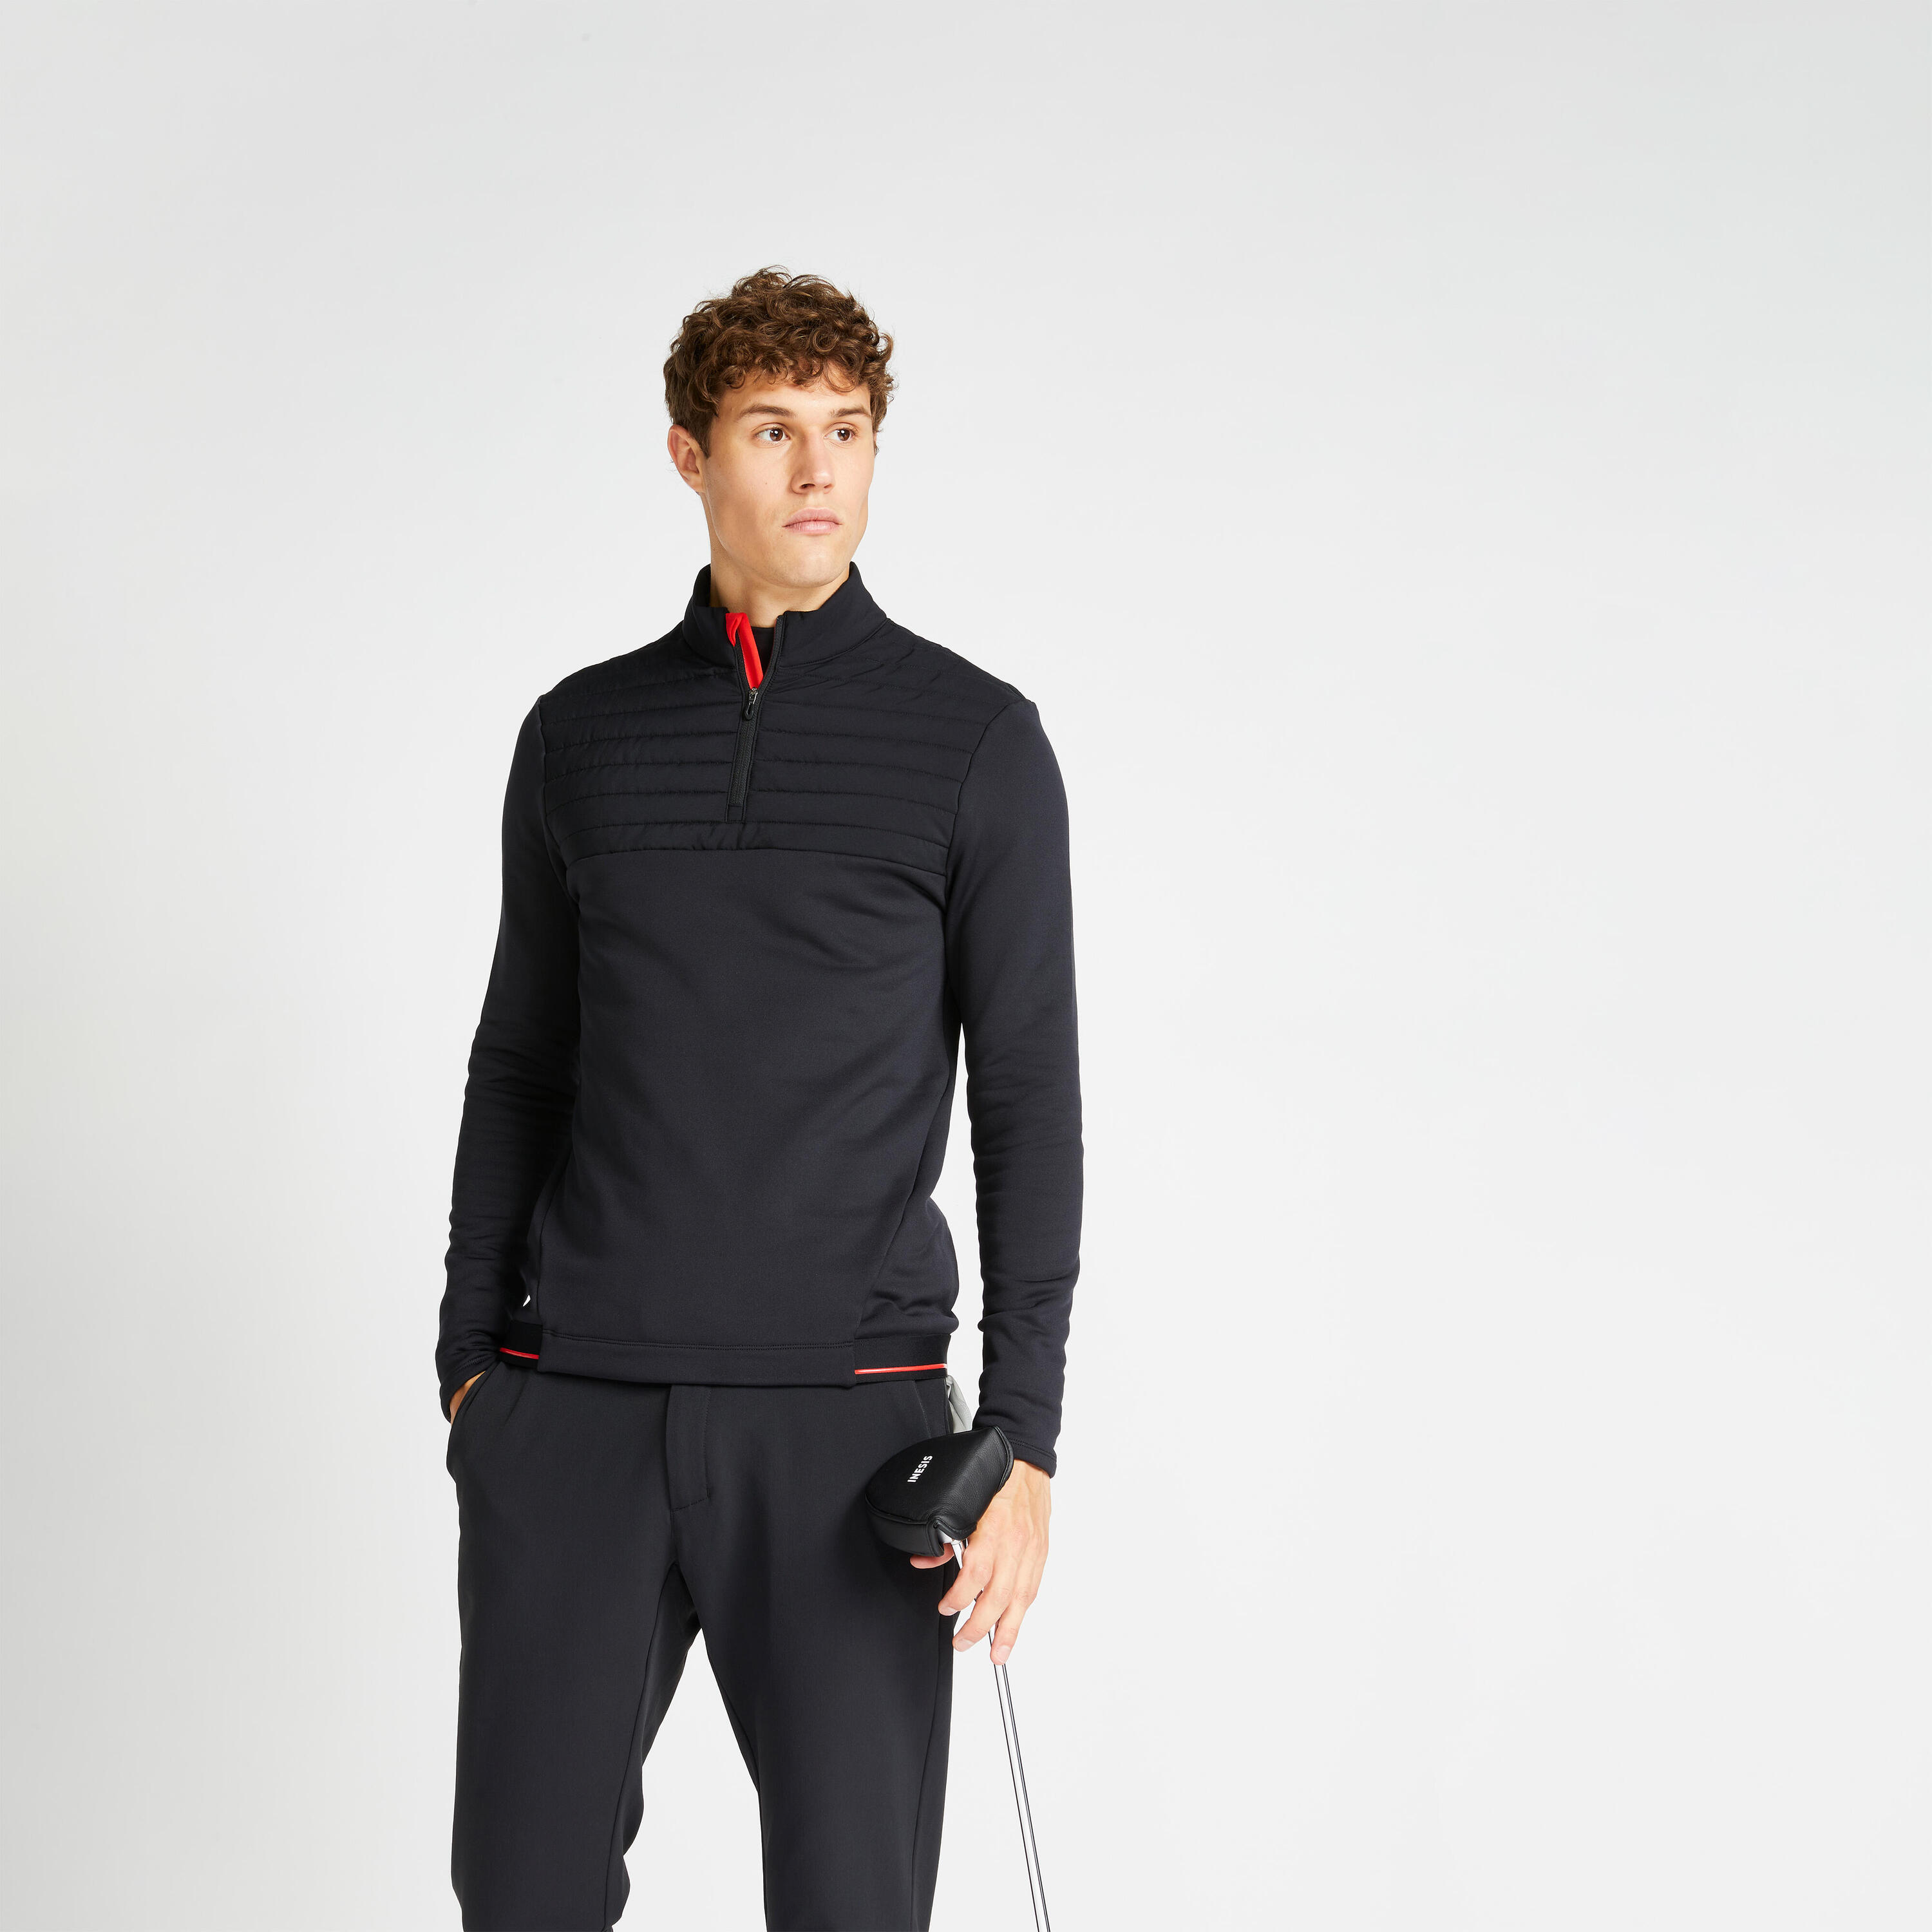 INESIS Men's golf winter fleece pullover CW500 black